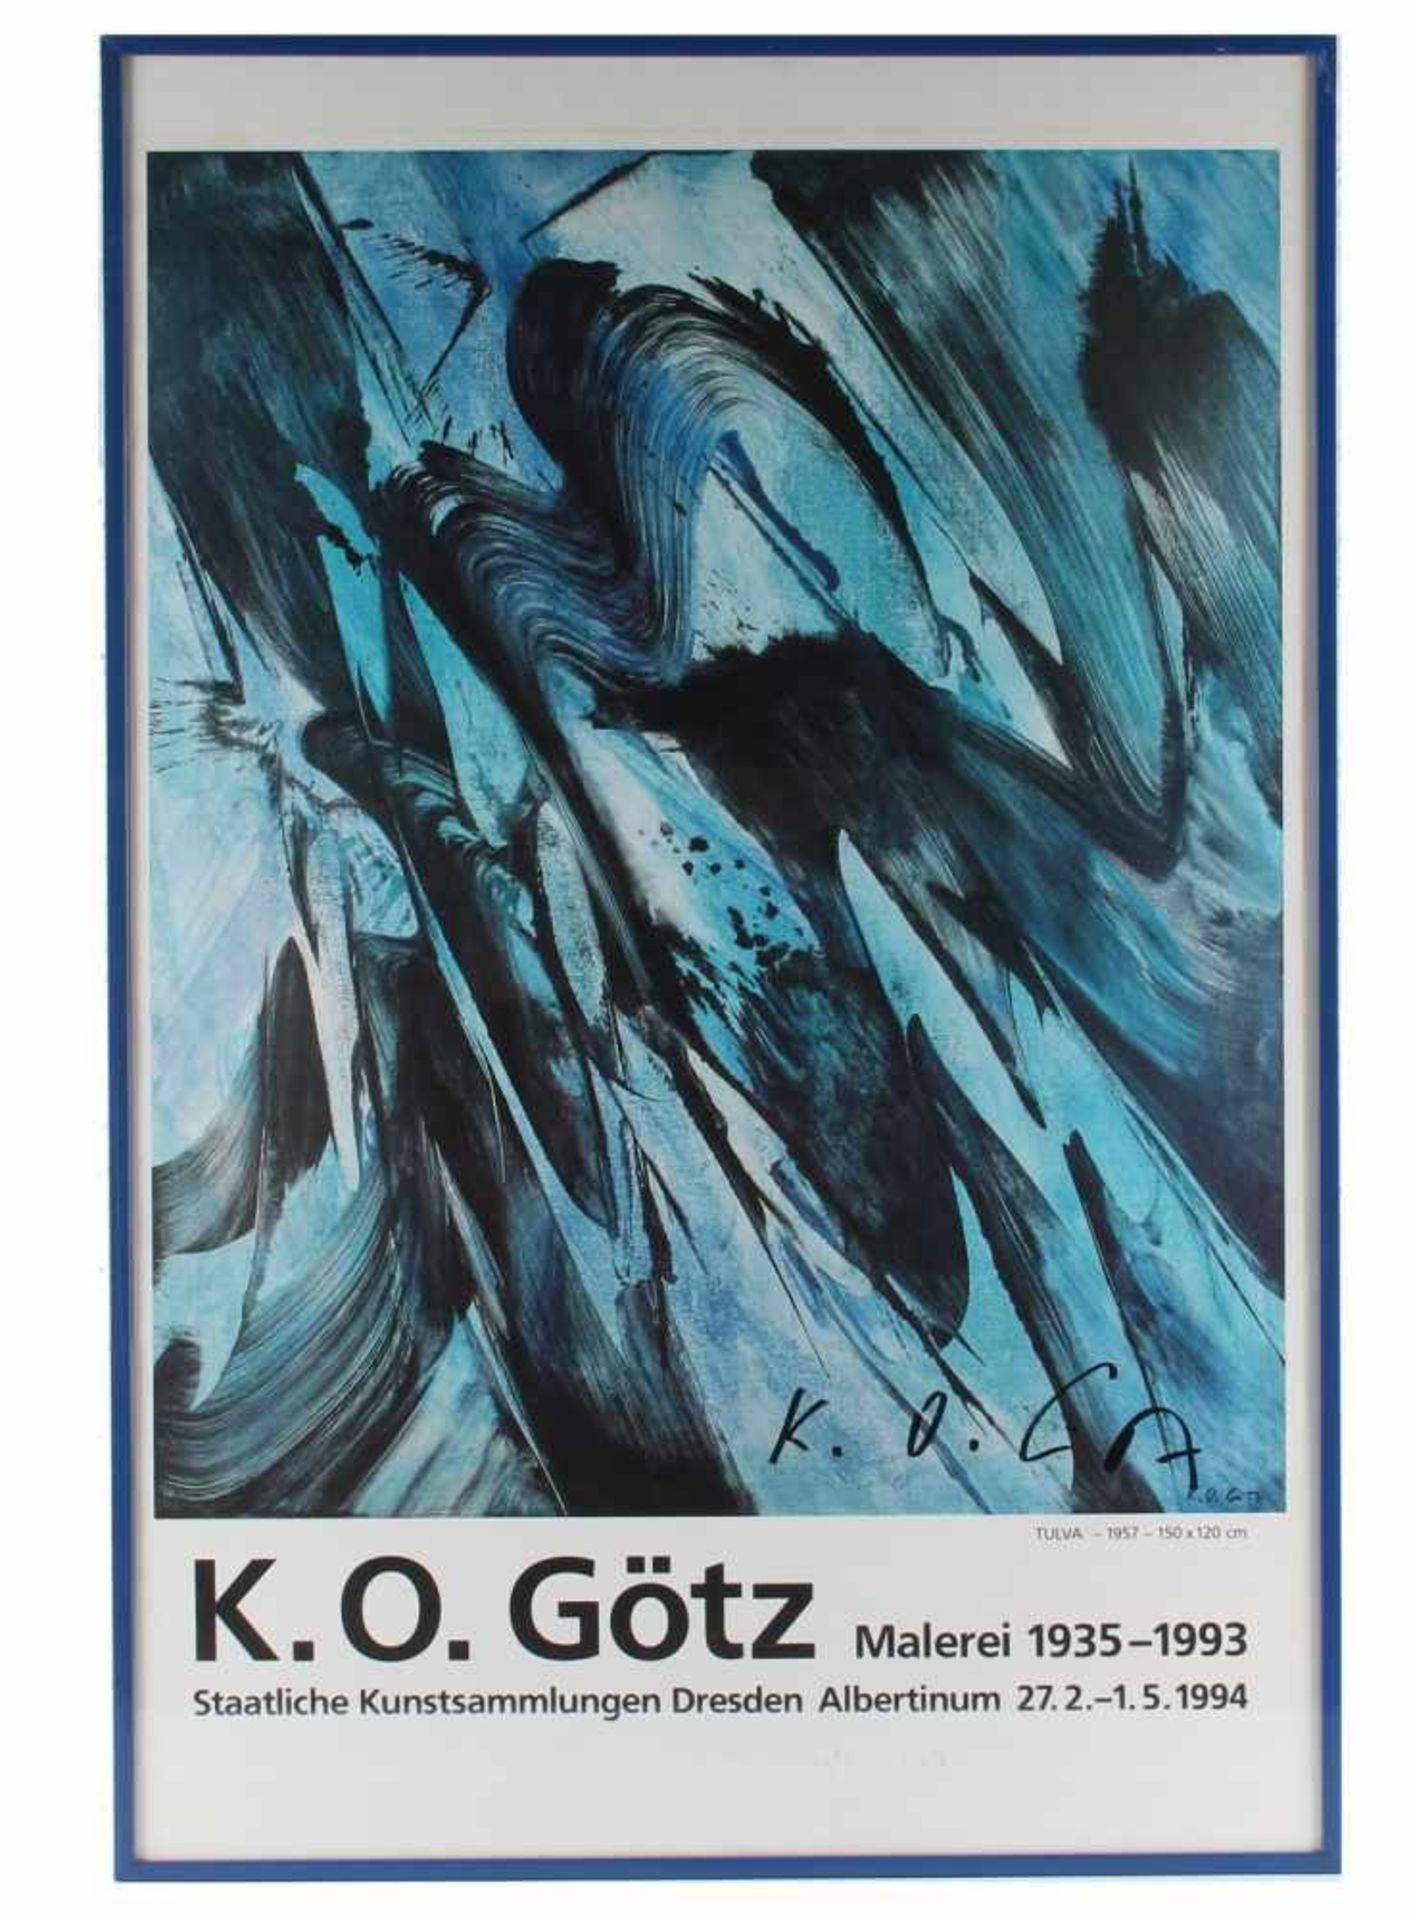 Karl Otto GÖTZ (1914-2017) signiertes Plakat zur Ausstellung der Staatlichen Kunstsammlungen Dresden